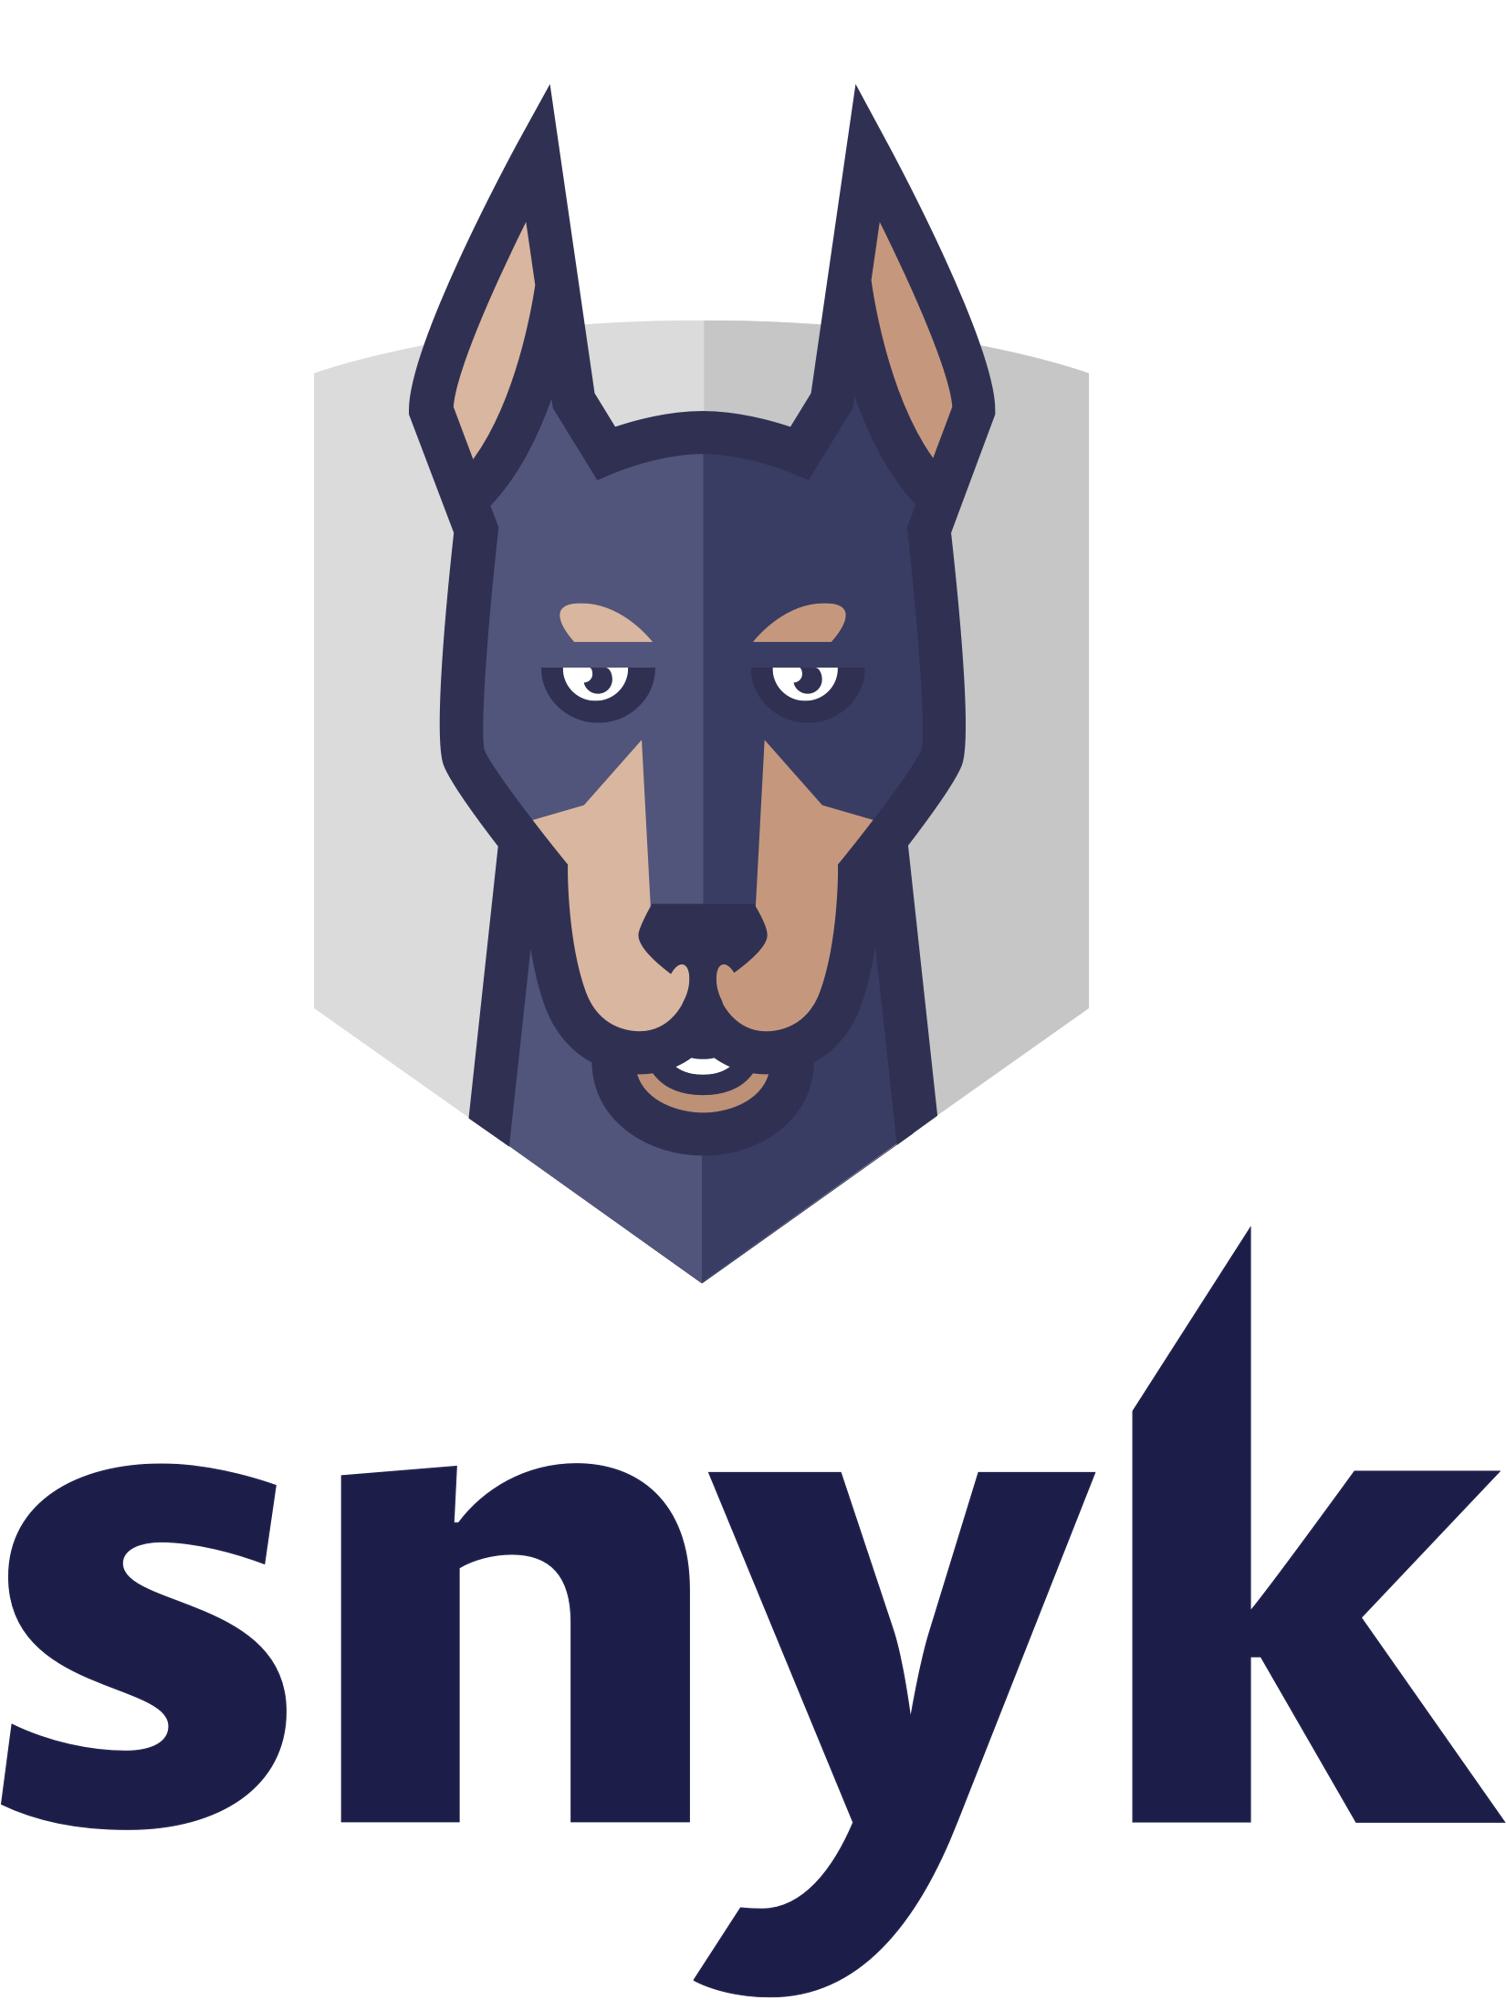 SNYK logo full vertical large (1)